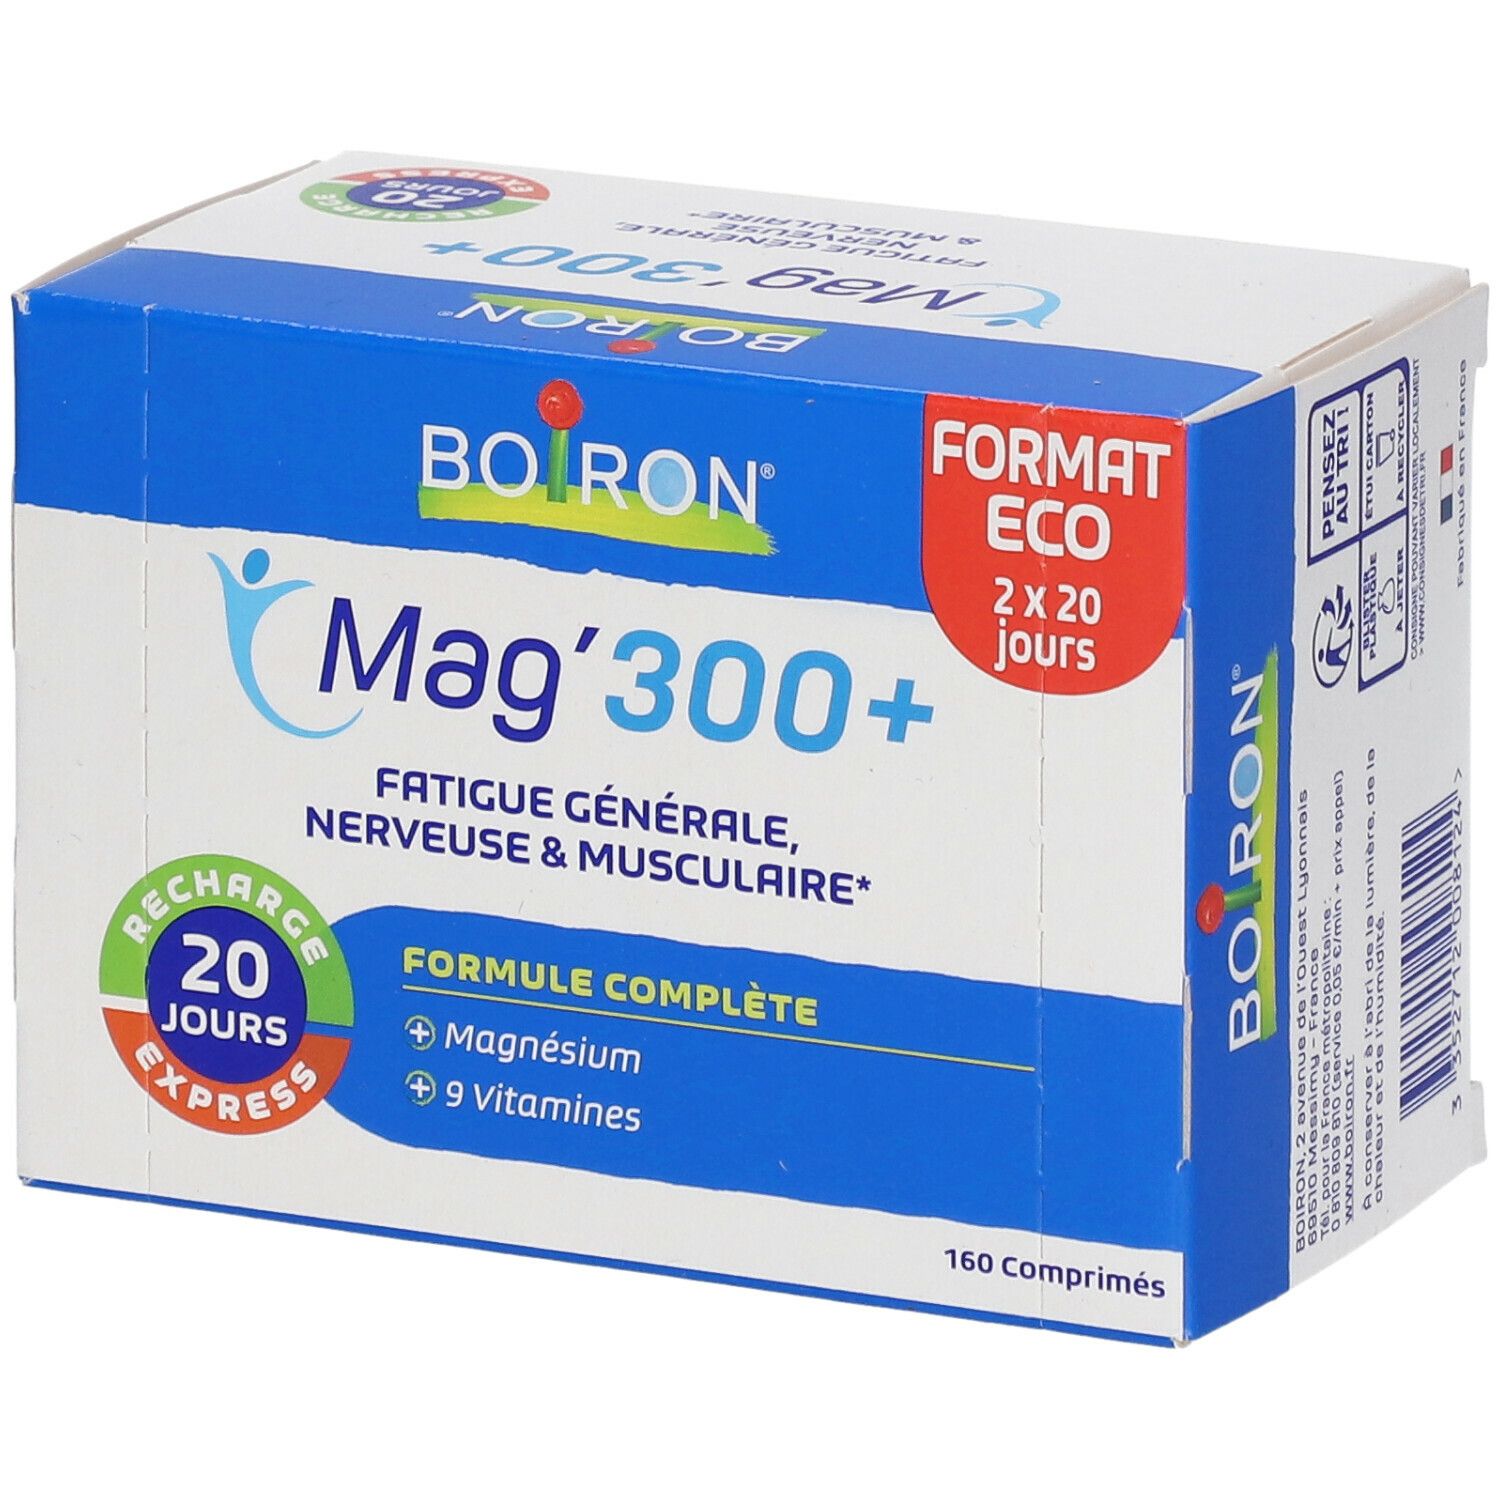 Boiron® Mag'300+